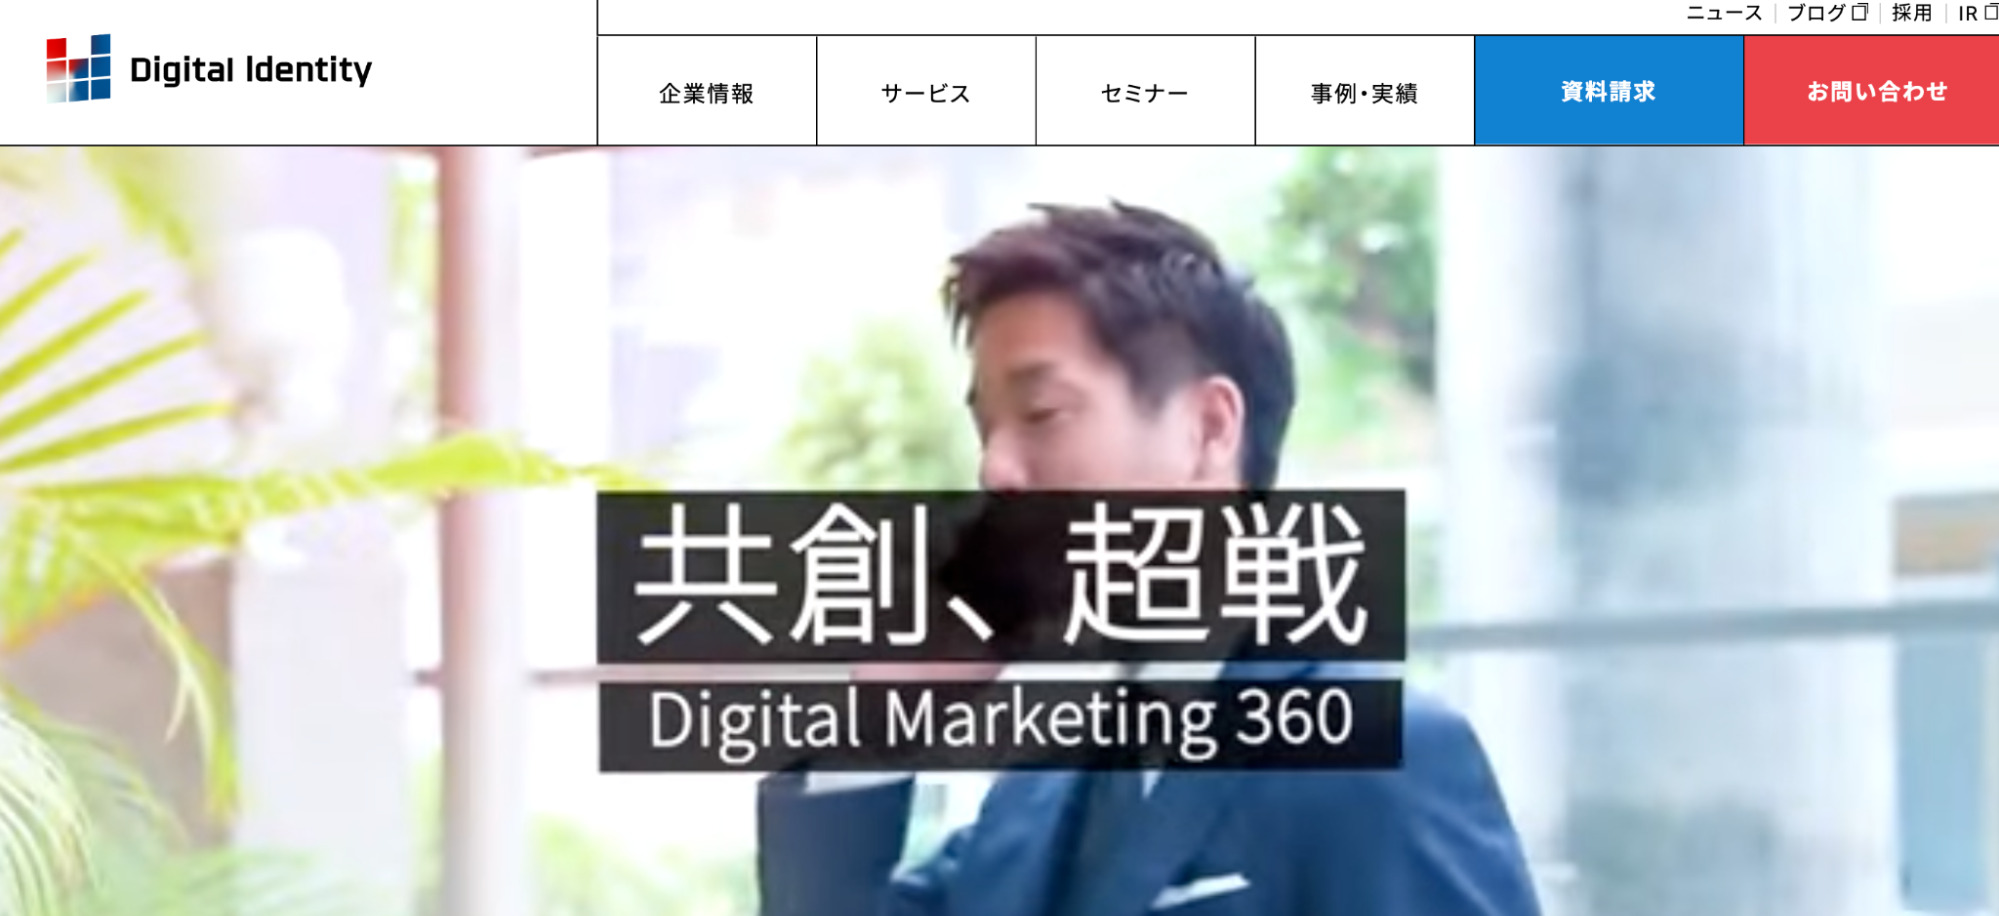 【8位】株式会社デジタルアイデンティティ